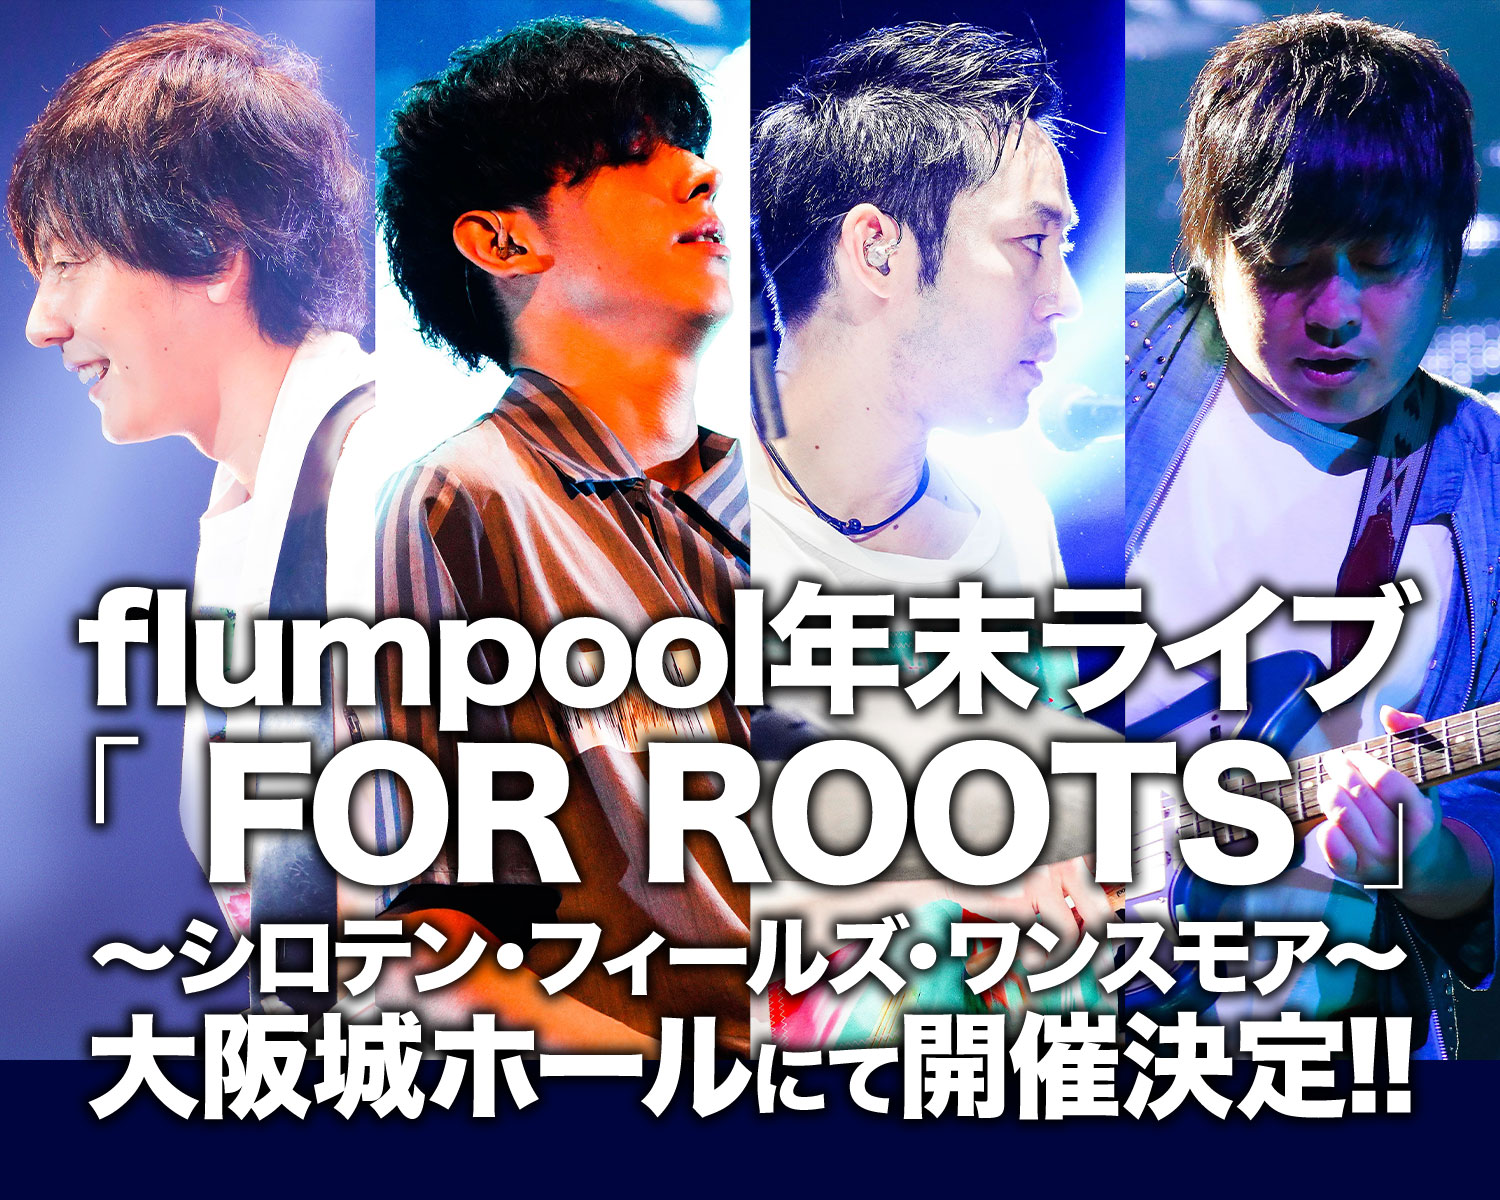 Flumpool年末ライブ For Roots シロテン フィールズ ワンスモア スペシャルサイト